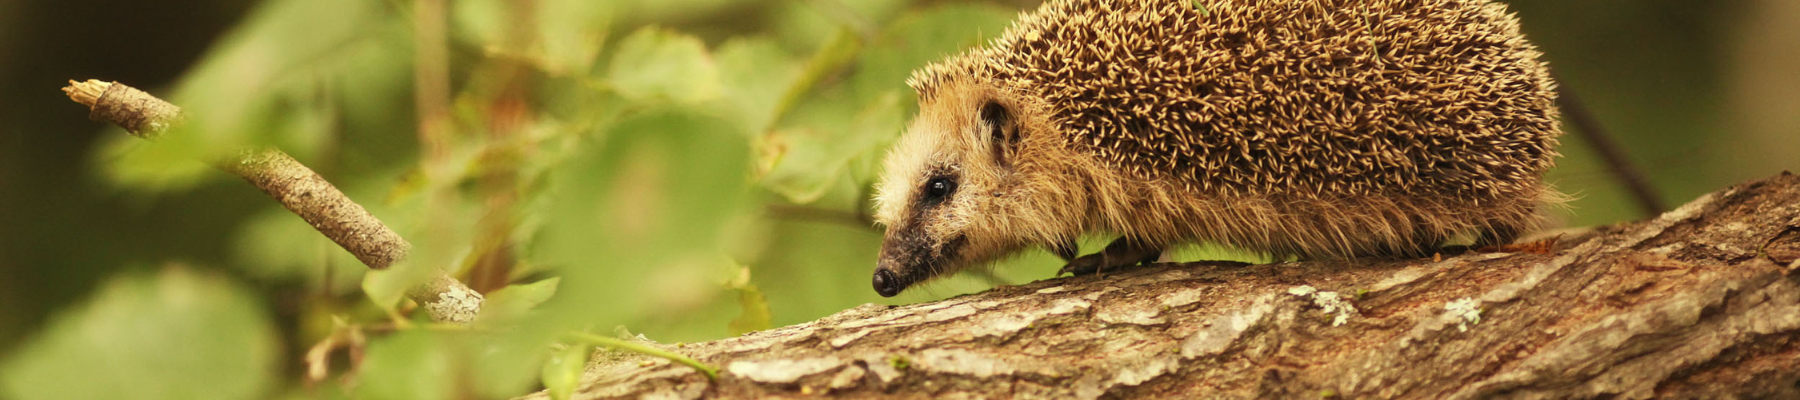 A hedgehog walking on a fallen wooden branch